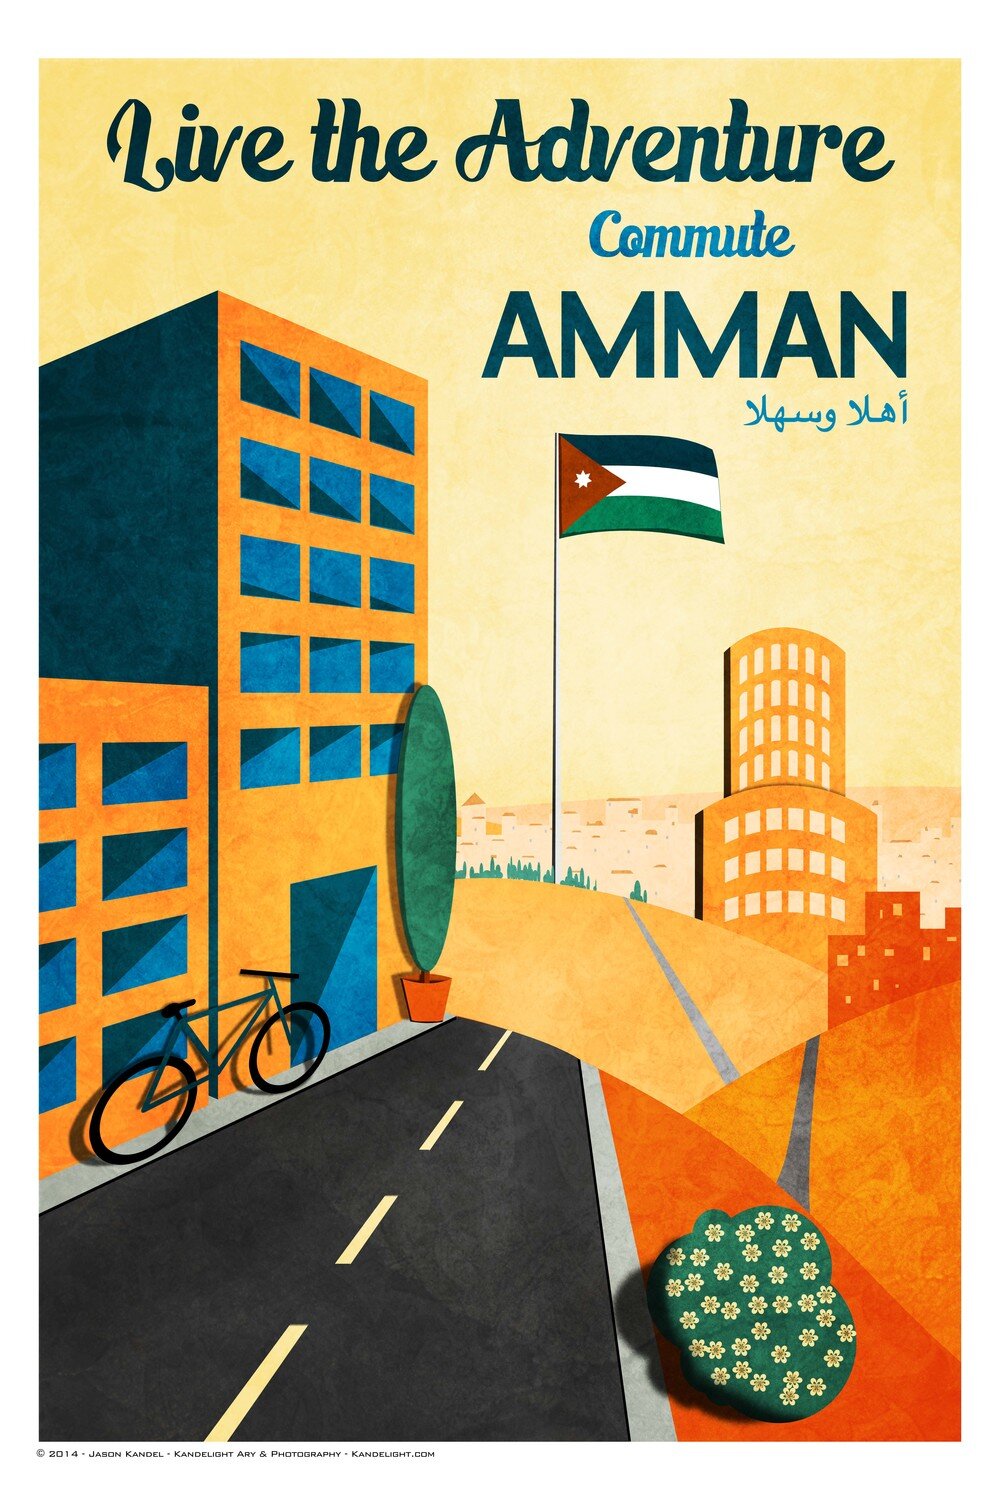 Commute+Amman.jpg